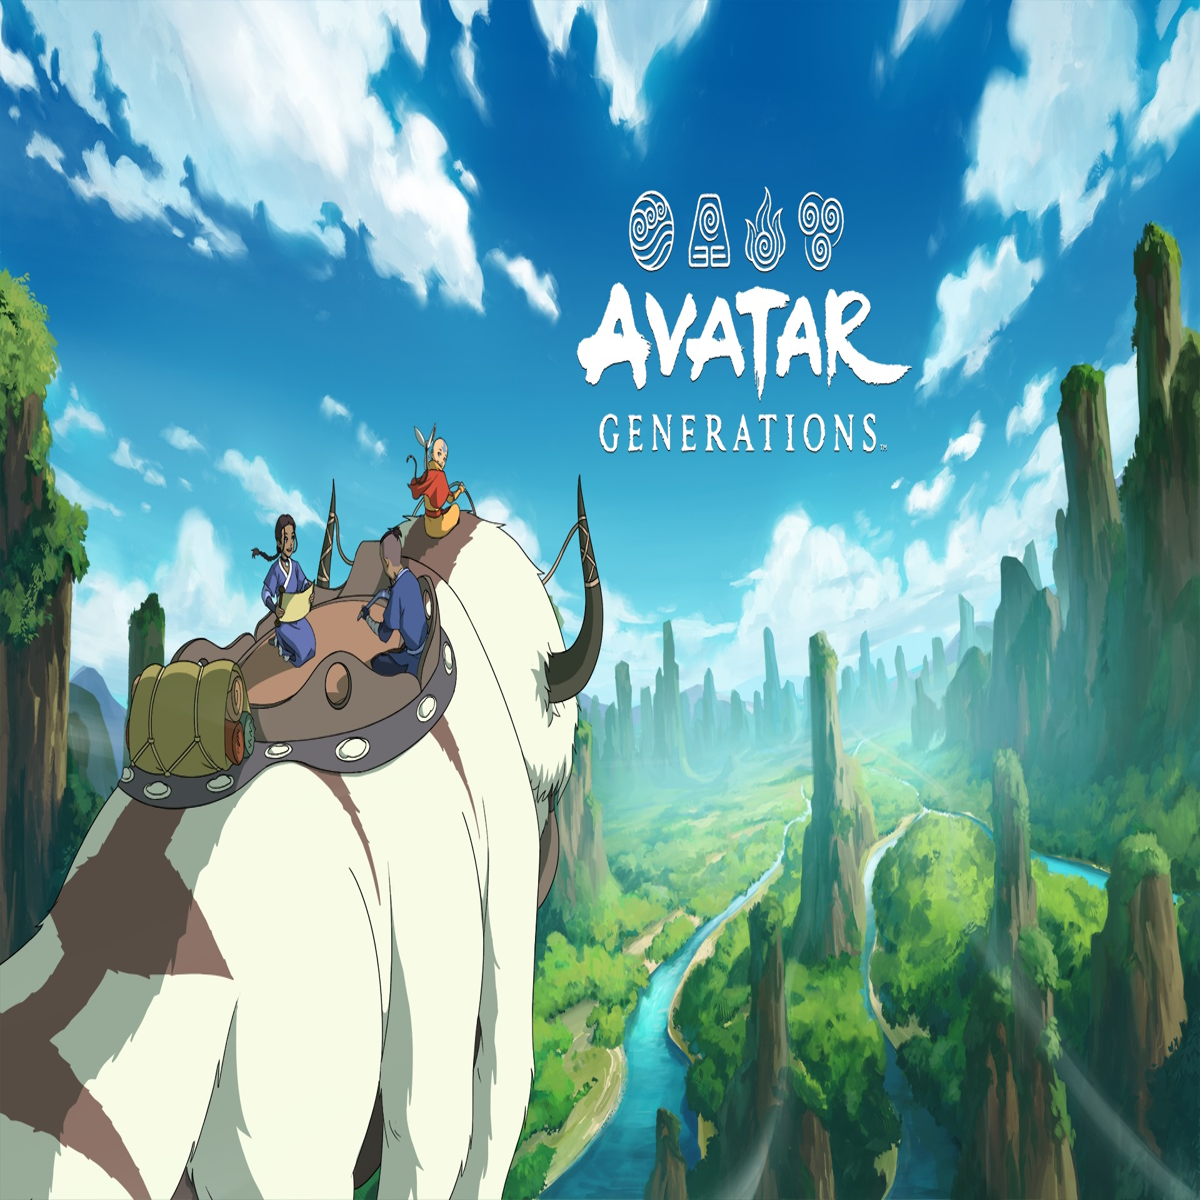 Mobile game Avatar: The Last Airbender 2024 sẽ khiến bạn cảm thấy như đang sống trong thế giới ảo của Aang và những người bạn. Với đồ họa đẹp mắt, lối chơi đơn giản và tính năng đa dạng, bạn sẽ không thể rời mắt khỏi trò chơi này. Hãy tải ngay và cùng tham gia cuộc phiêu lưu!